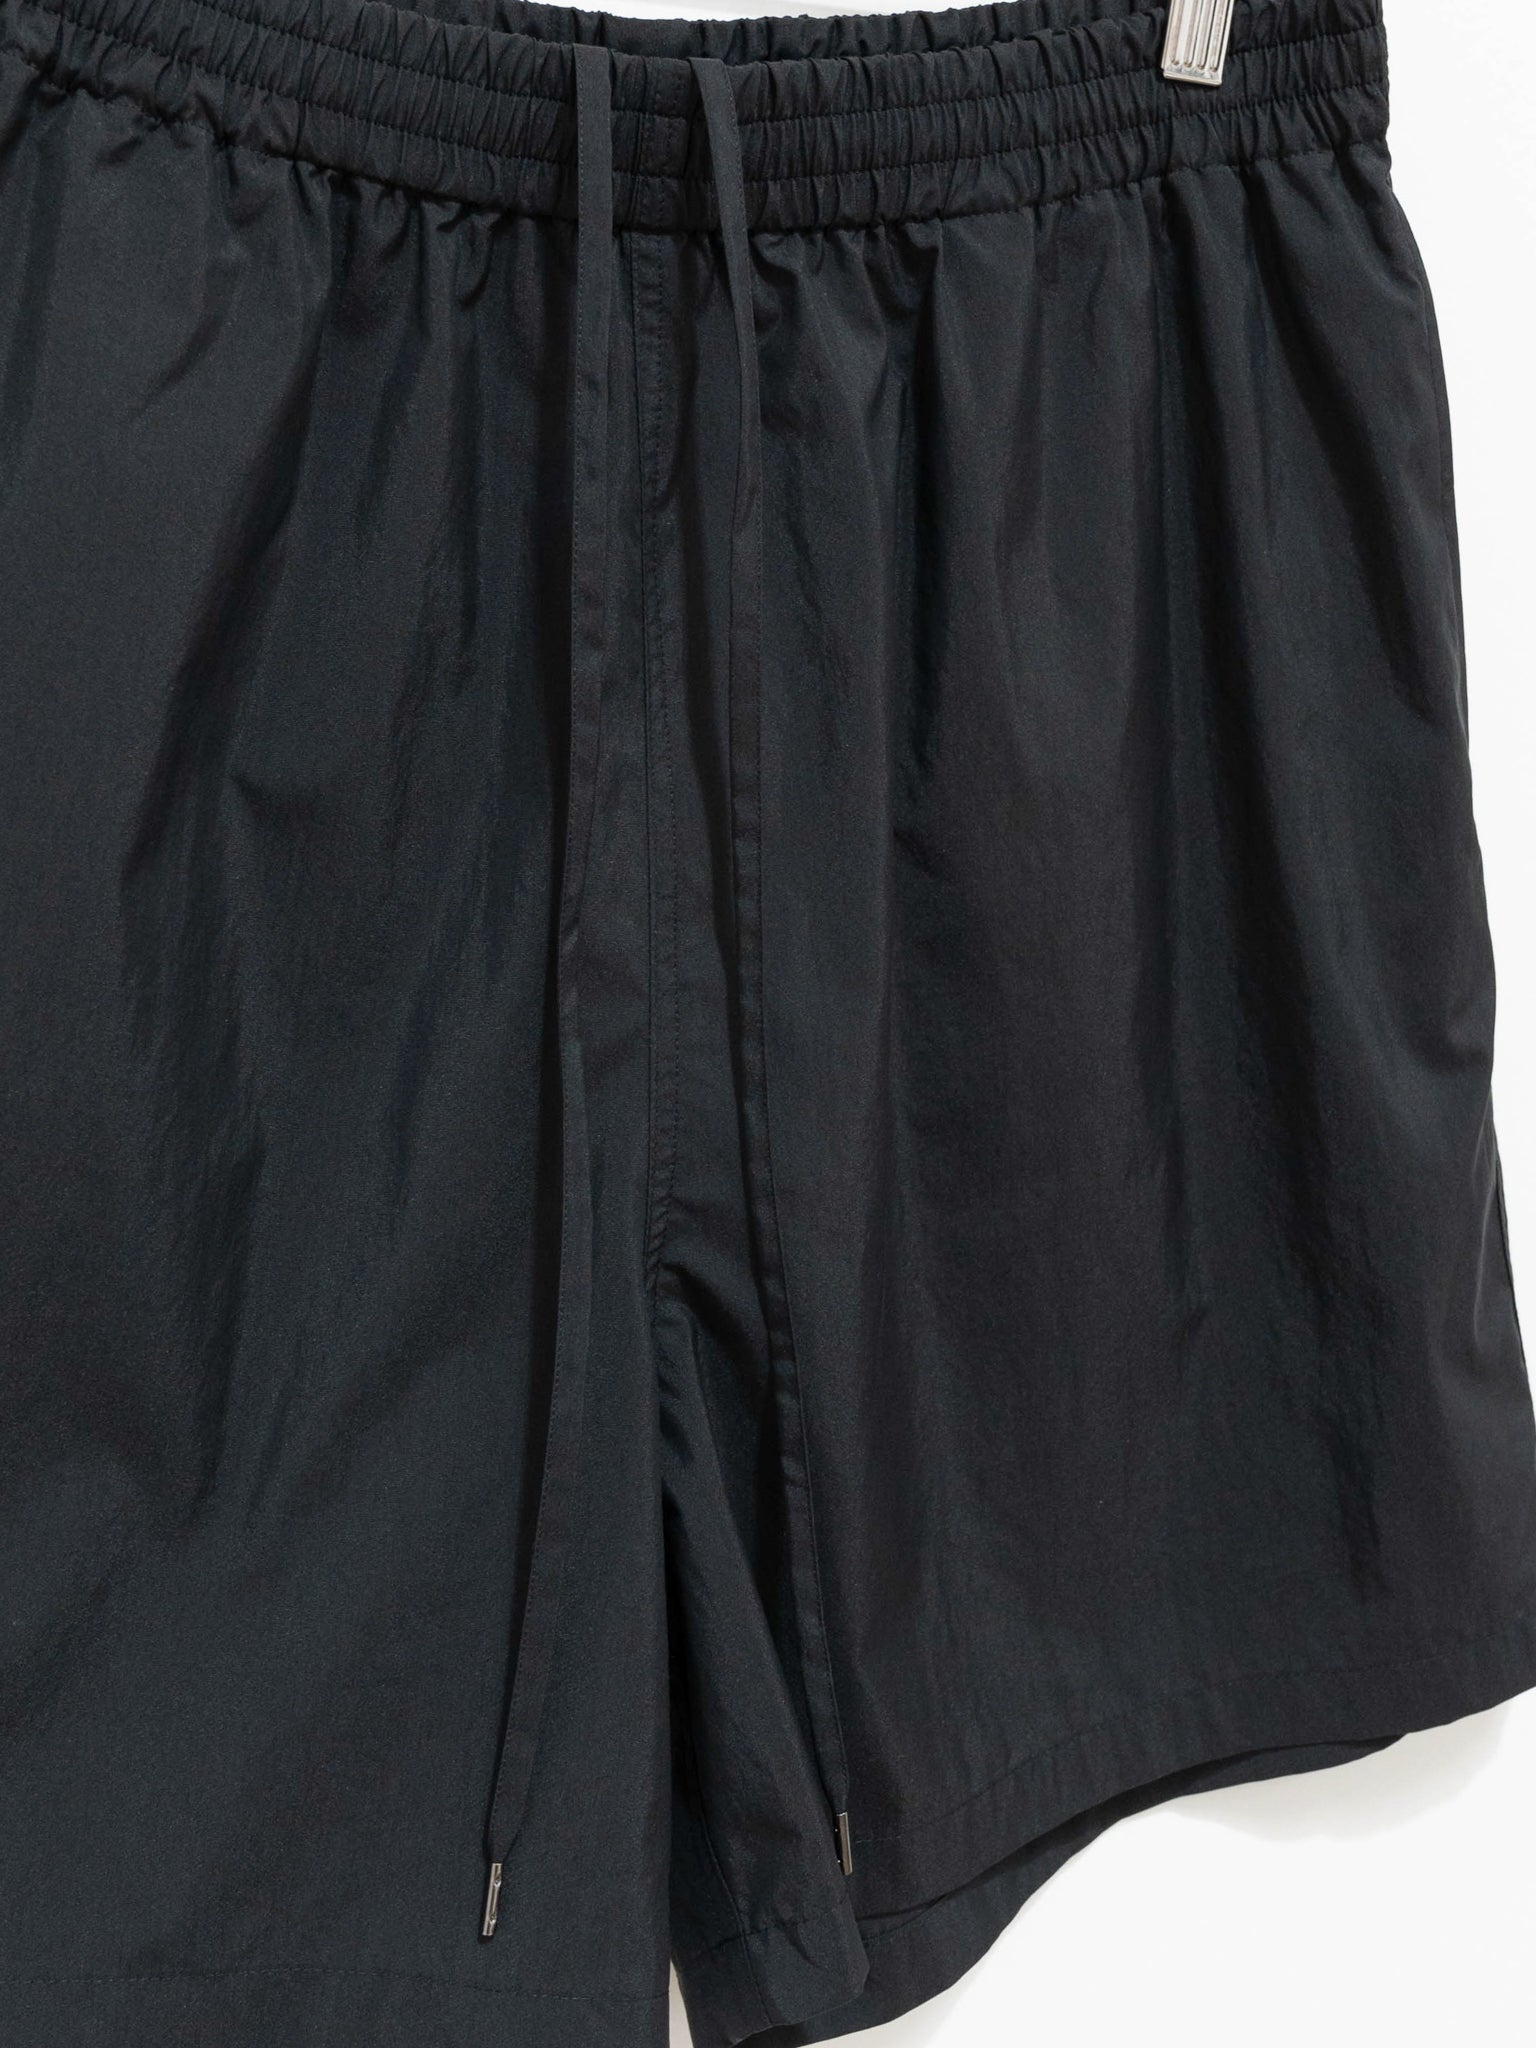 ennoy / Cotton Easy Shorts (BLACK)L-